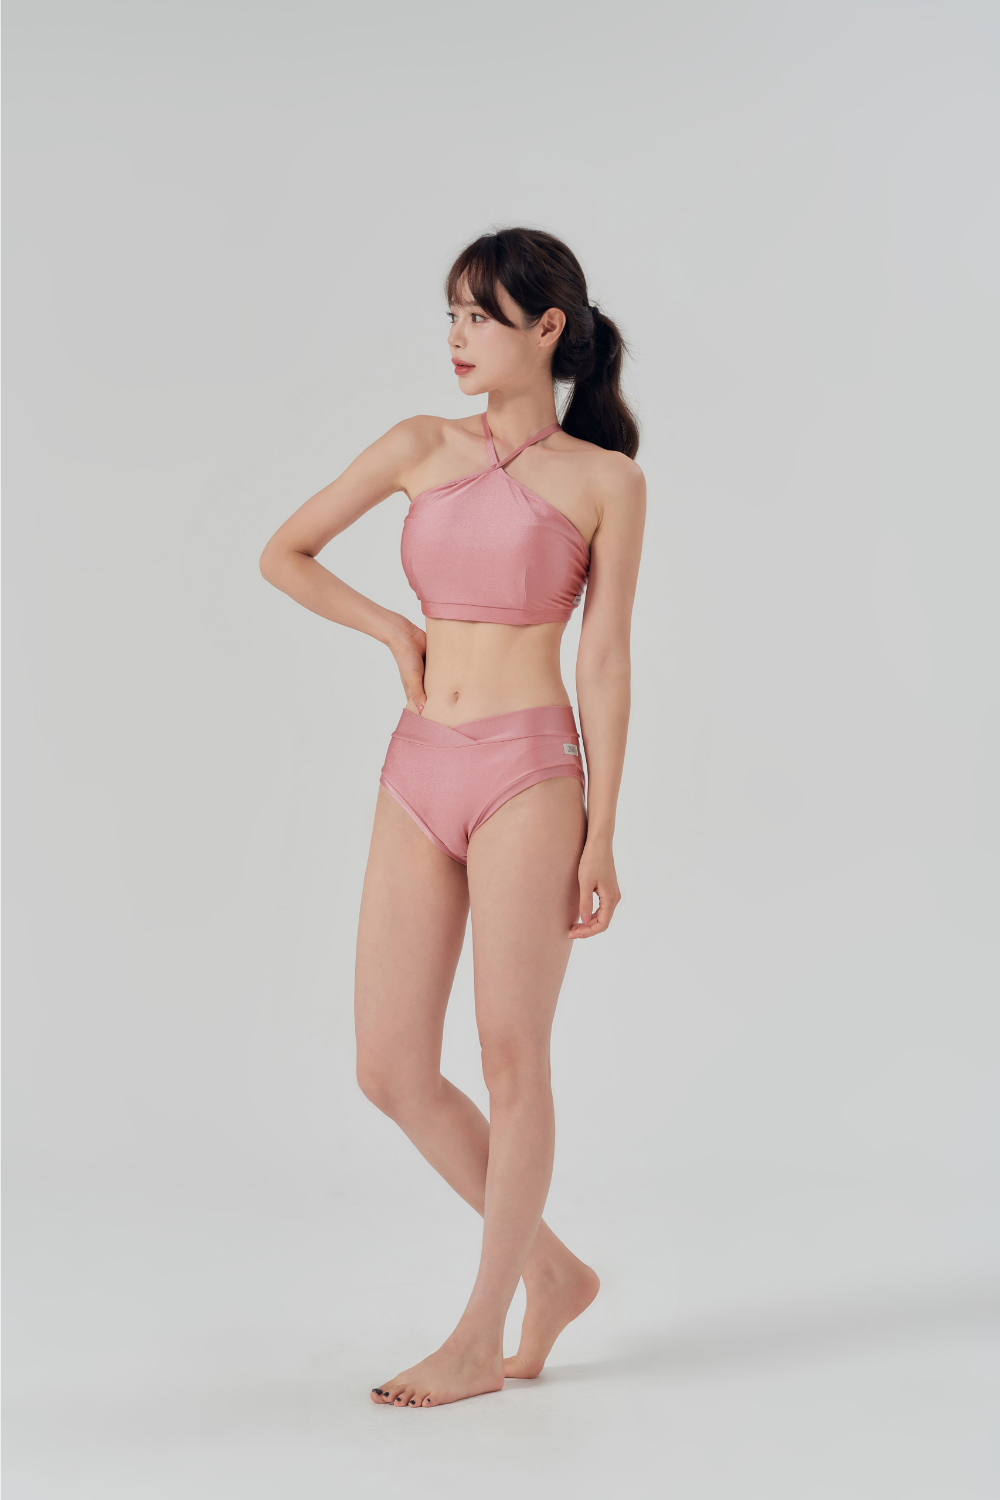 Swimsuit/Underwear Model Wearing Image-S7L3